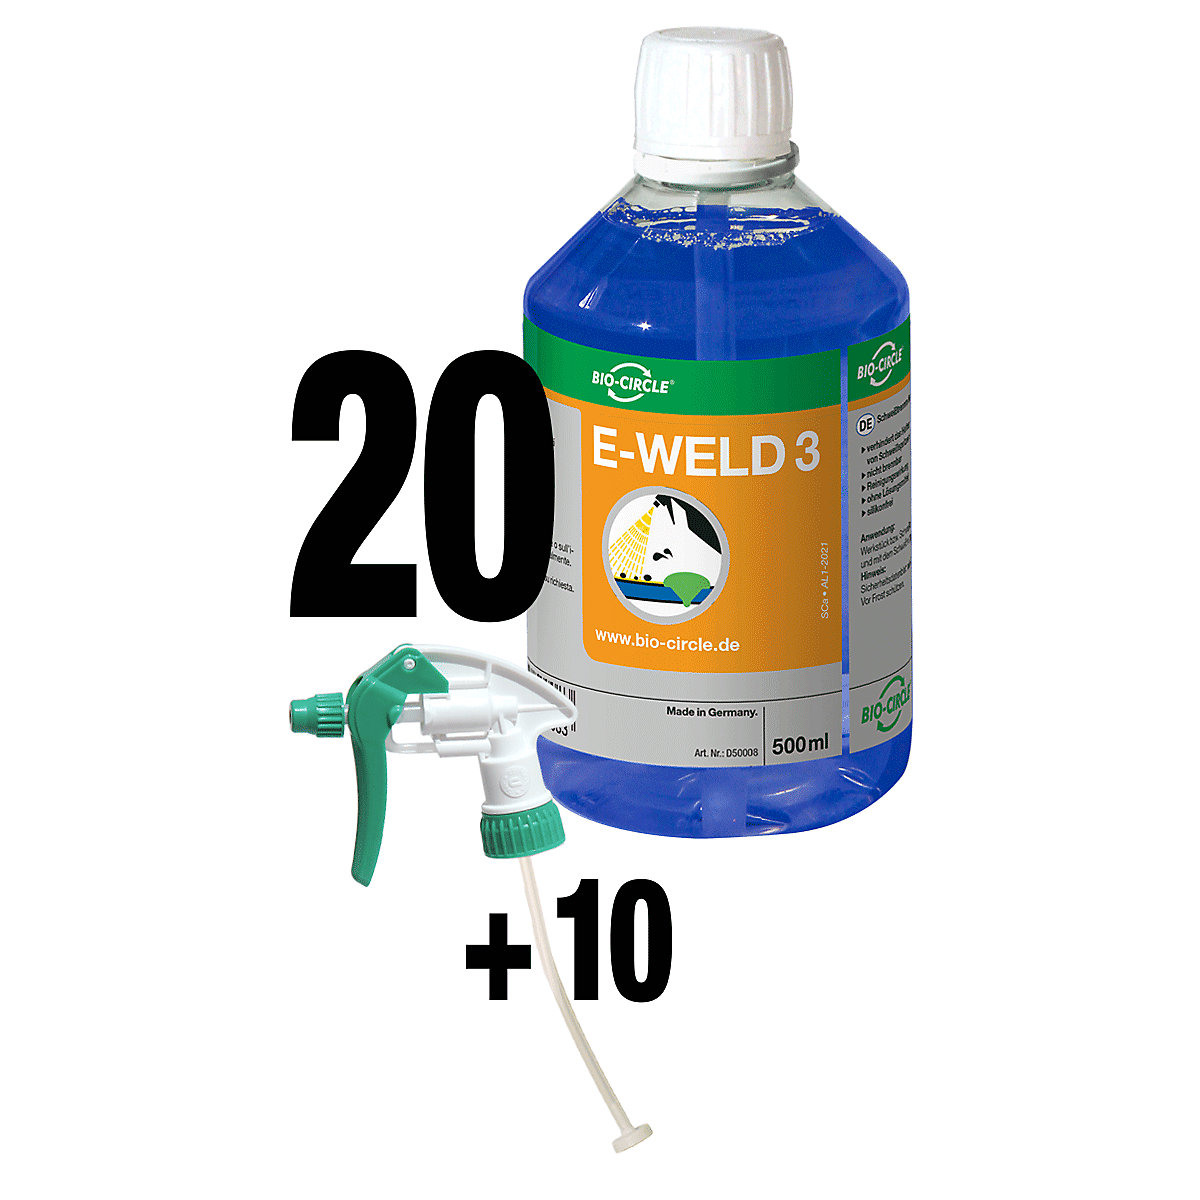 E-WELD 3 hegesztésvédő spray – Bio-Circle